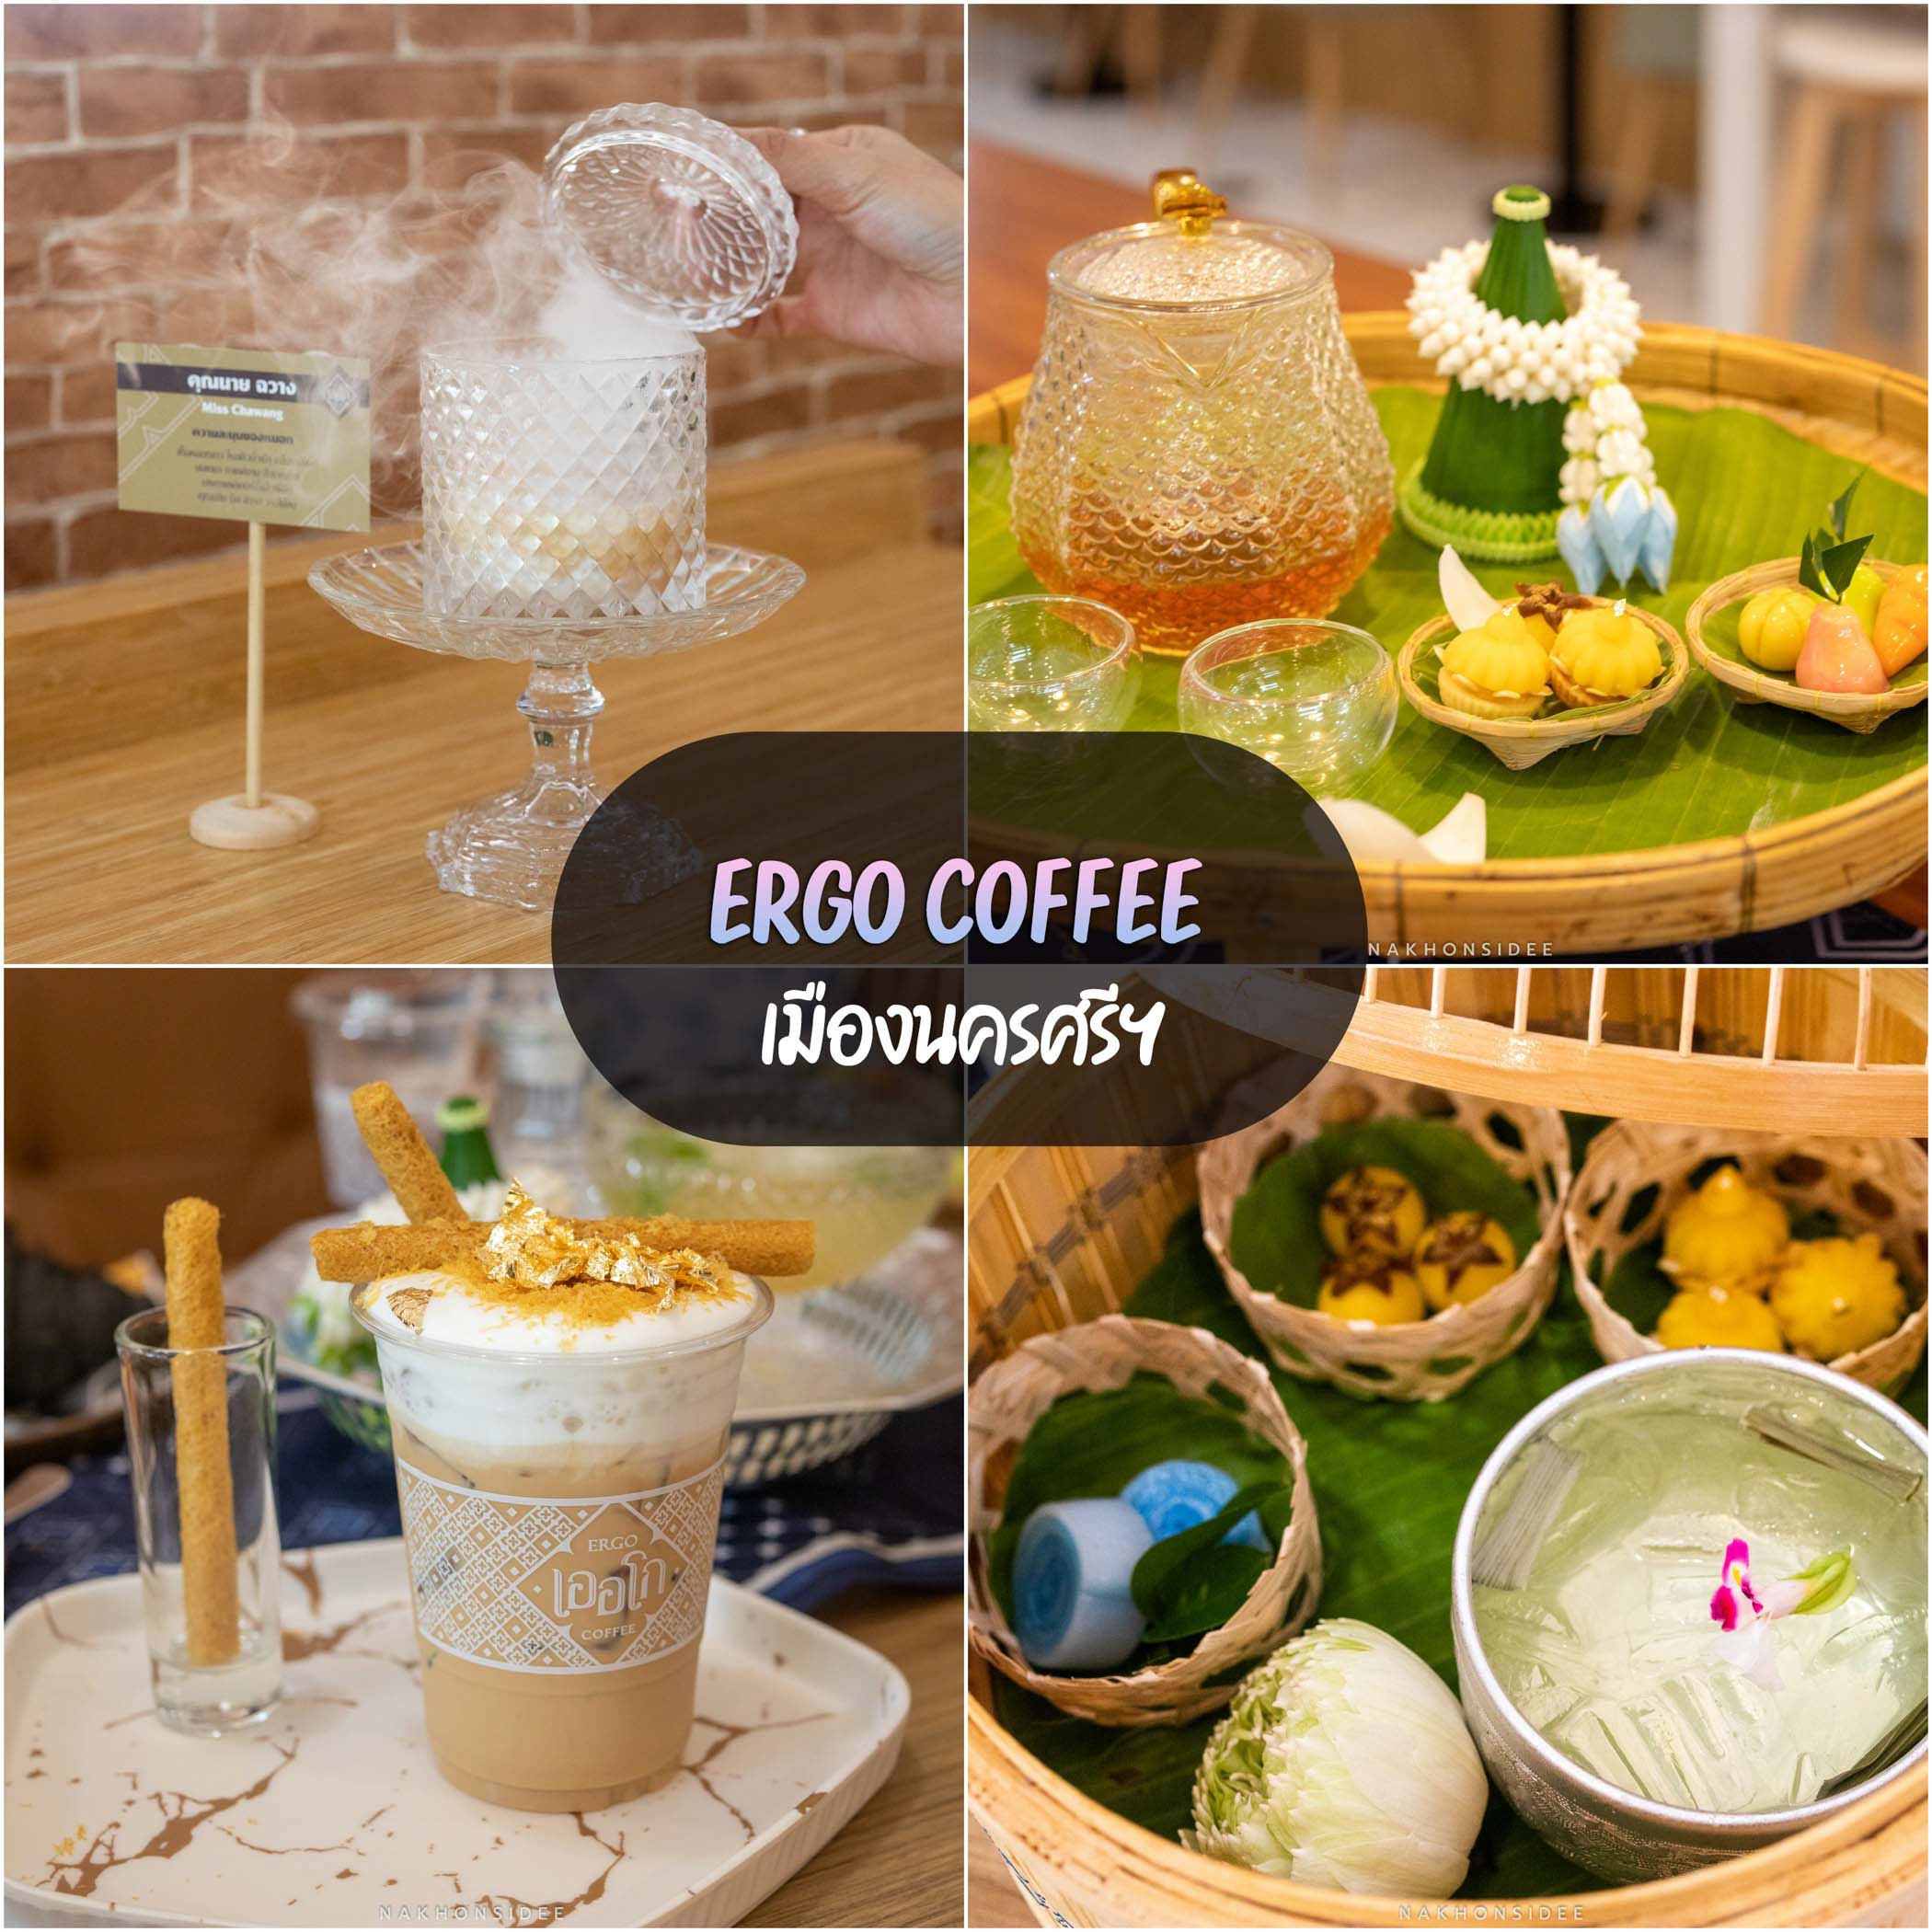 Ergo-Coffee เออโก-คอฟฟี่-คาเฟ่รีโนเวทใหม่เมืองนครศรี-อร่อยเลยฮะ ร้านอาหารนครศรีธรรมราช,ของกิน,ร้านอาหาร,อร่อย,ก๋วยเตี๋ยว,คาเฟ่,ร้านเด็ด,ชาบู,ปิ้งย่าง,อาหารญี่ปุ่น,ร้านอร่อย,อาหารพื้นบ้าน